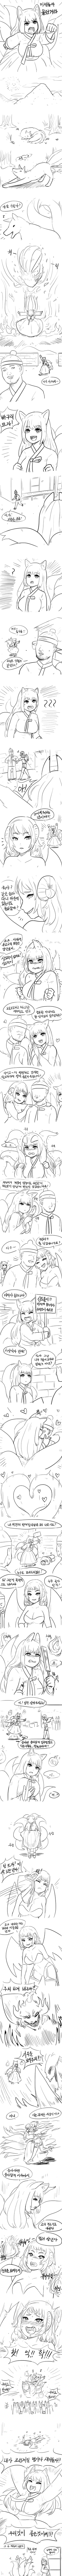 [카연갤] 미제를 몰아내는 구미호 만화.Manhwa.png.jpg